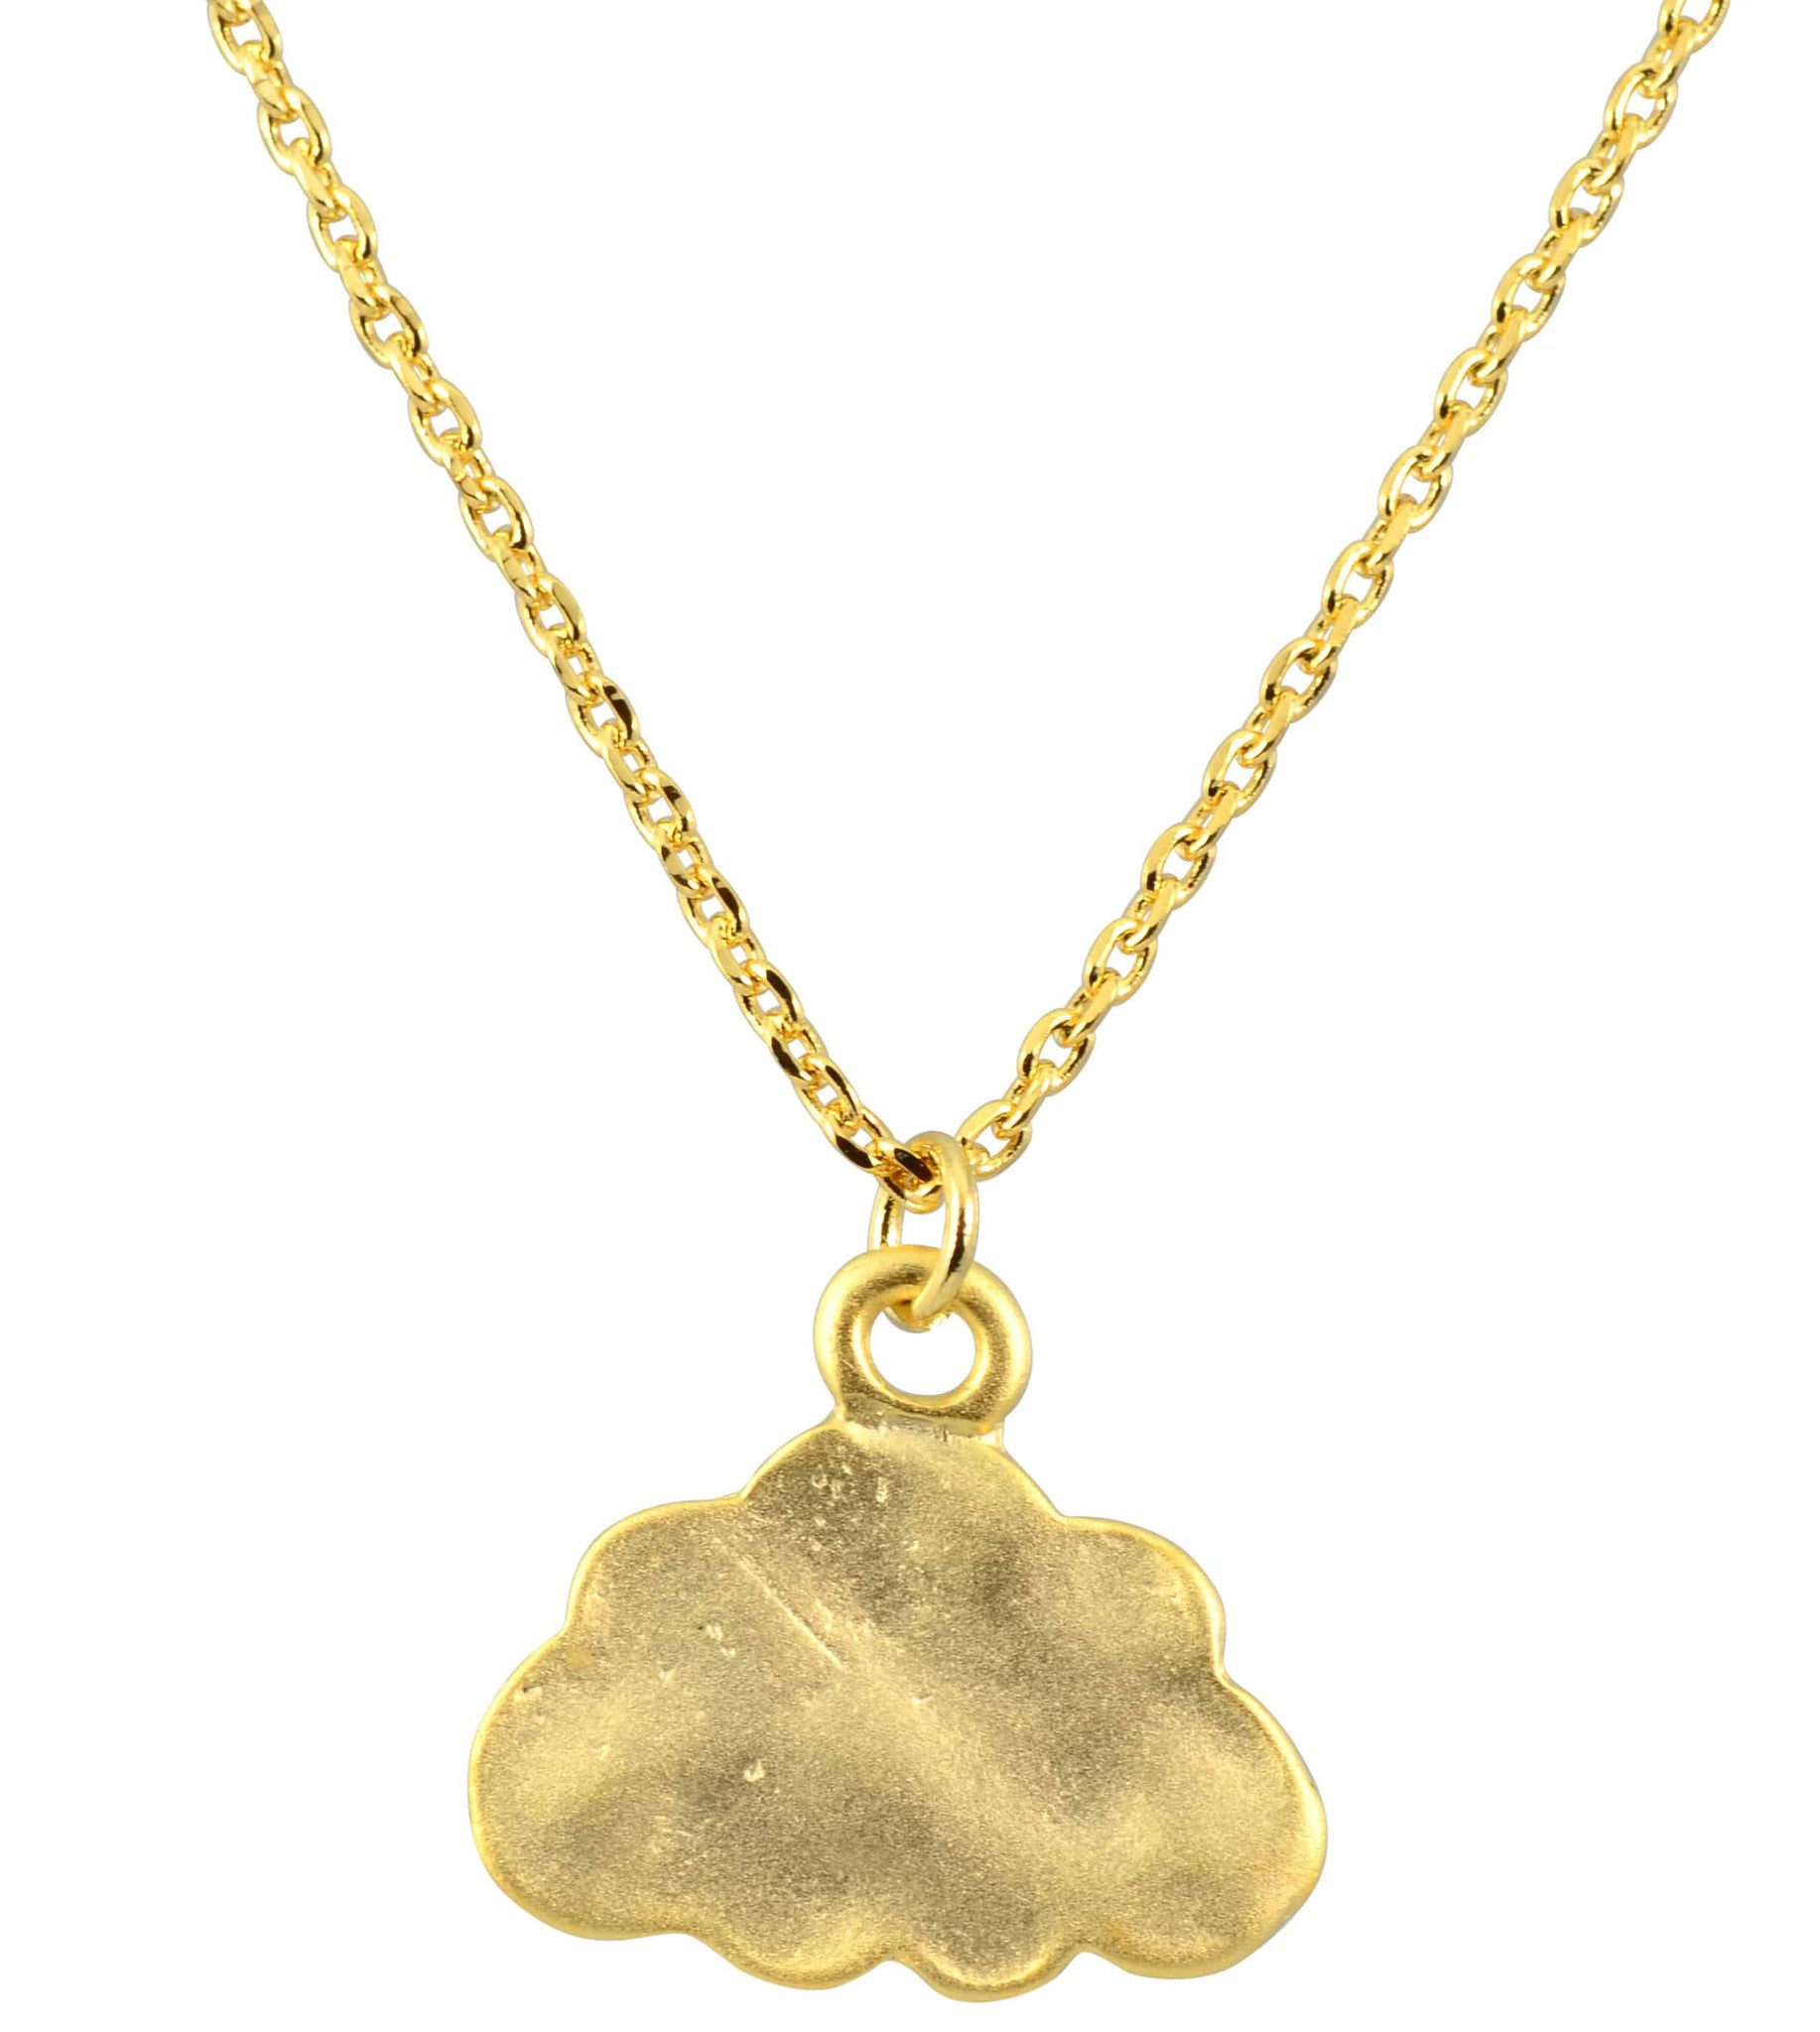 Enreverie Cloud Charm Necklace, Gold Plated Pendant